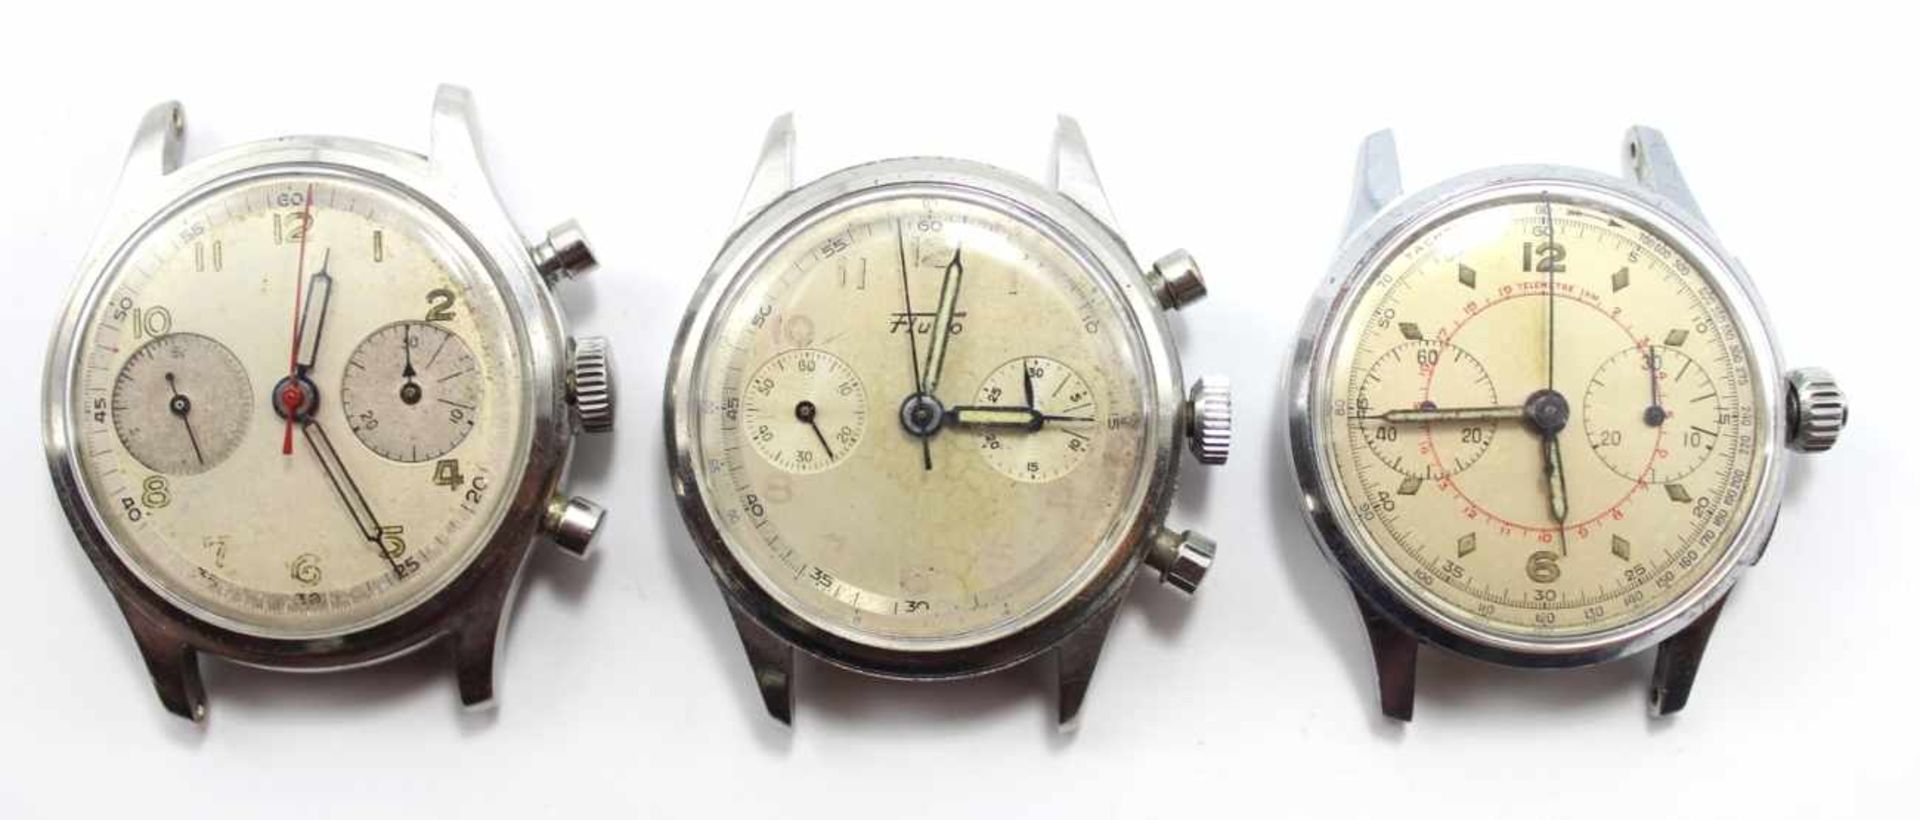 Lot Armbanduhren - Vintage um 1950 1 x gemarkt Fludo, Chronographen, mechanisches Werk mit